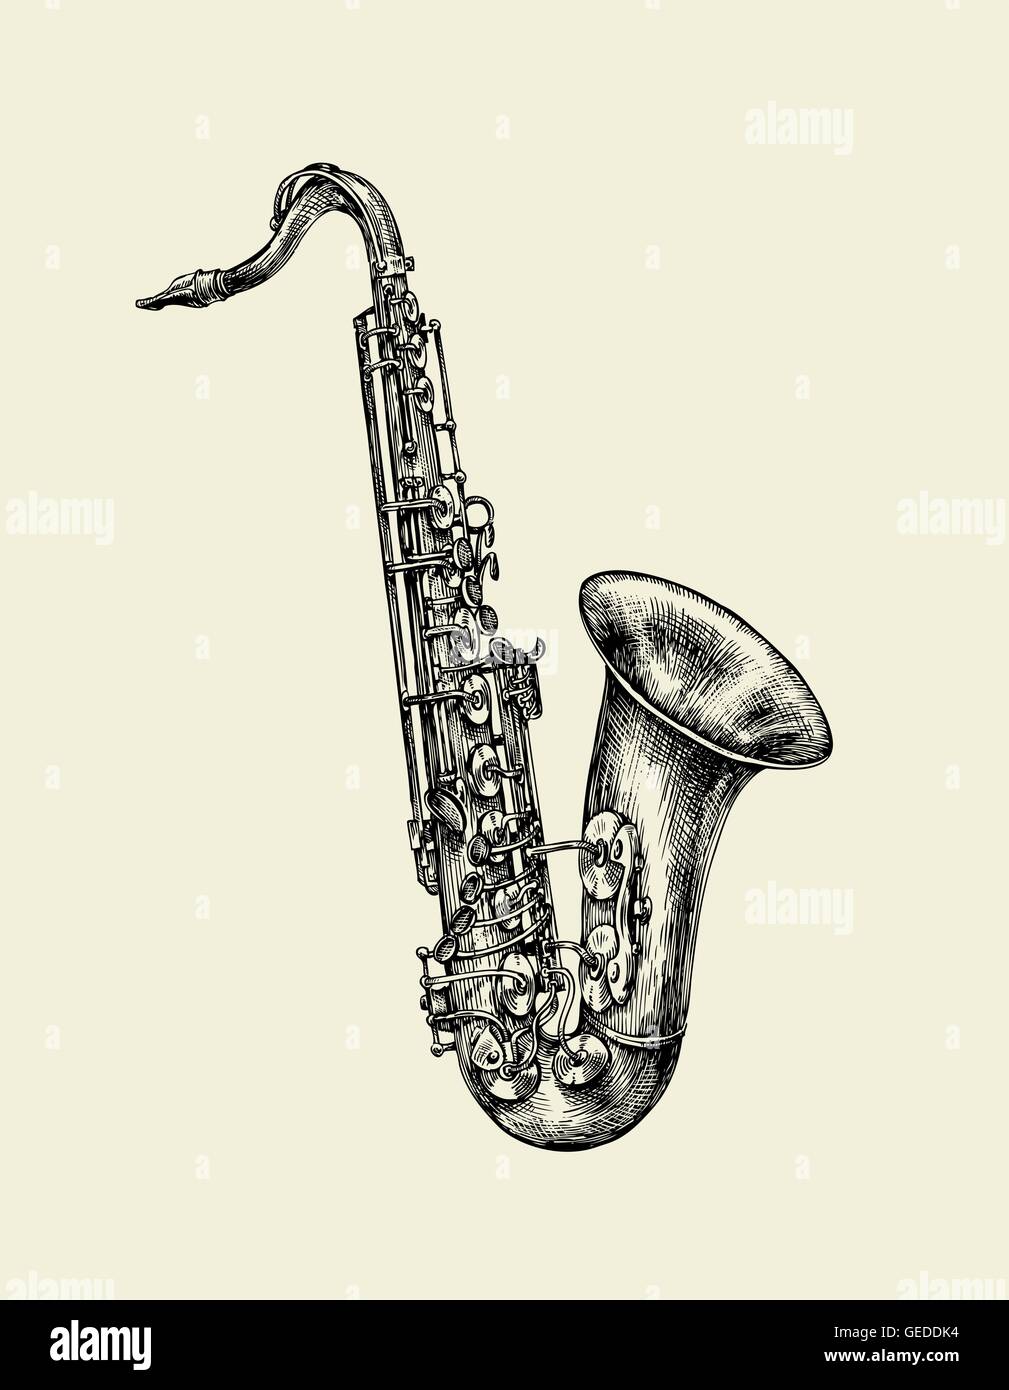 La musique jazz. Croquis dessinés à la main, saxophone, instrument de musique. Vector illustration Illustration de Vecteur